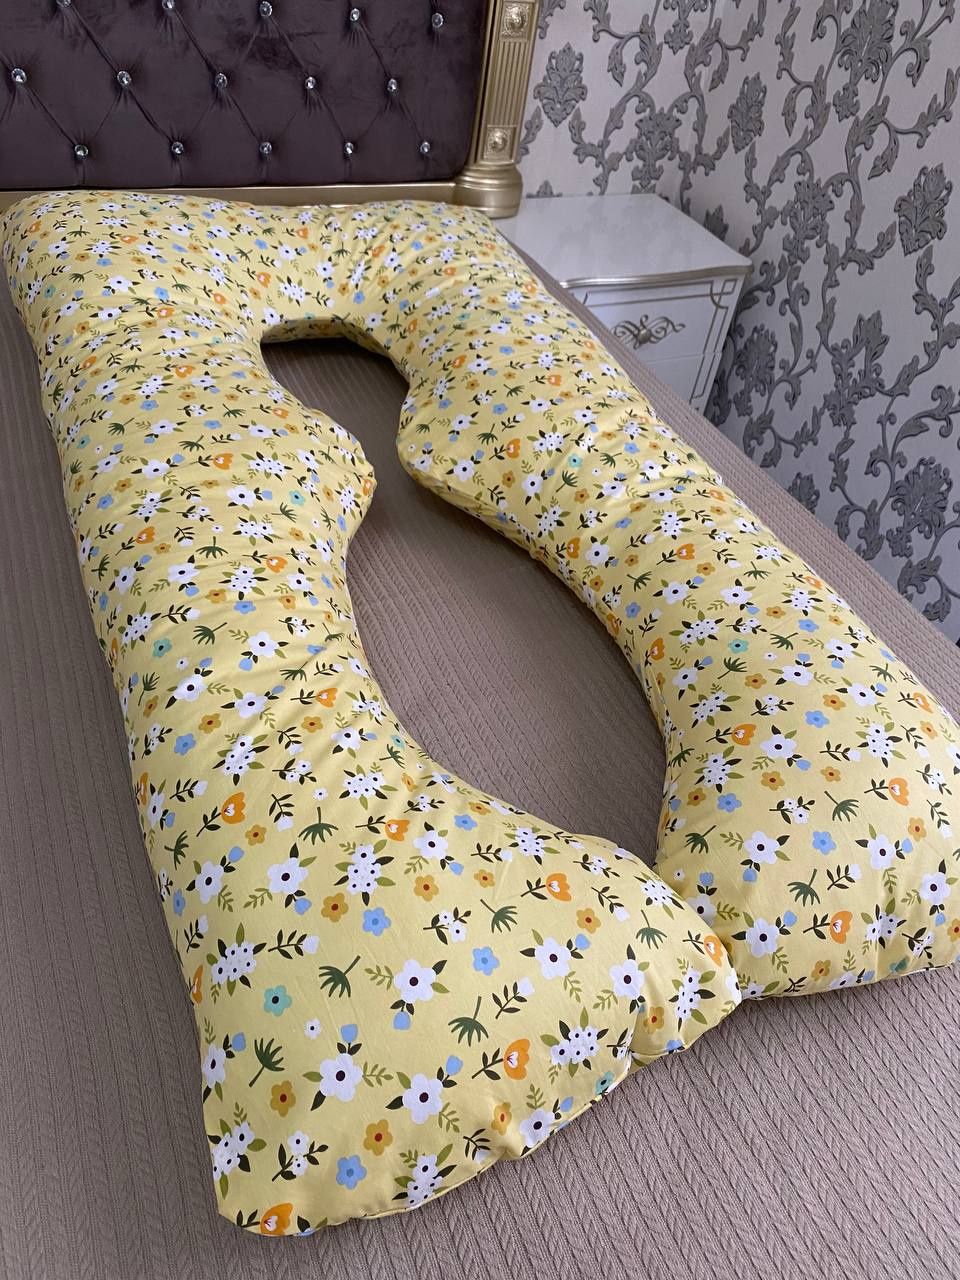 Качественные подушки для беременных от "Ayol baxti"